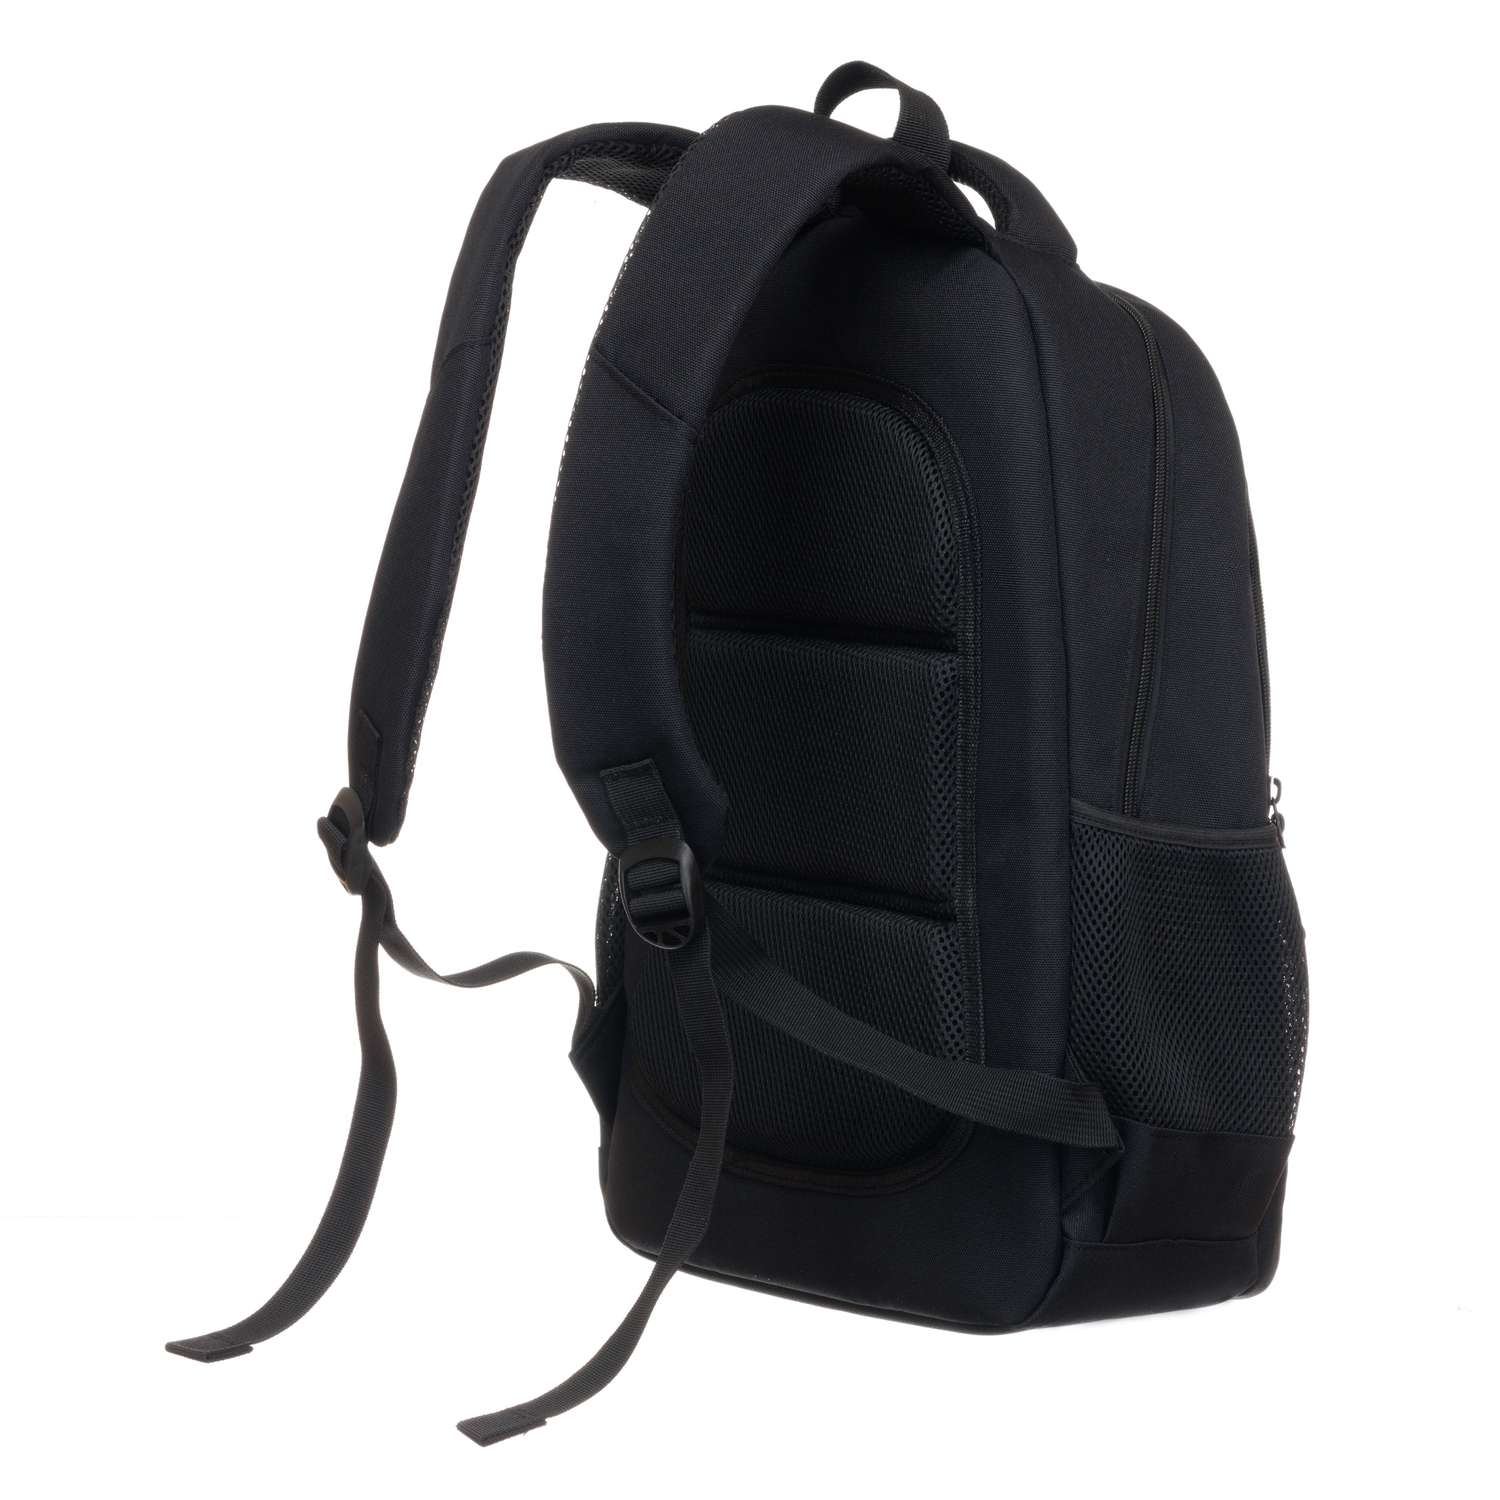 Рюкзак TORBER CLASS X черный и мешок для сменной обуви - фото 3